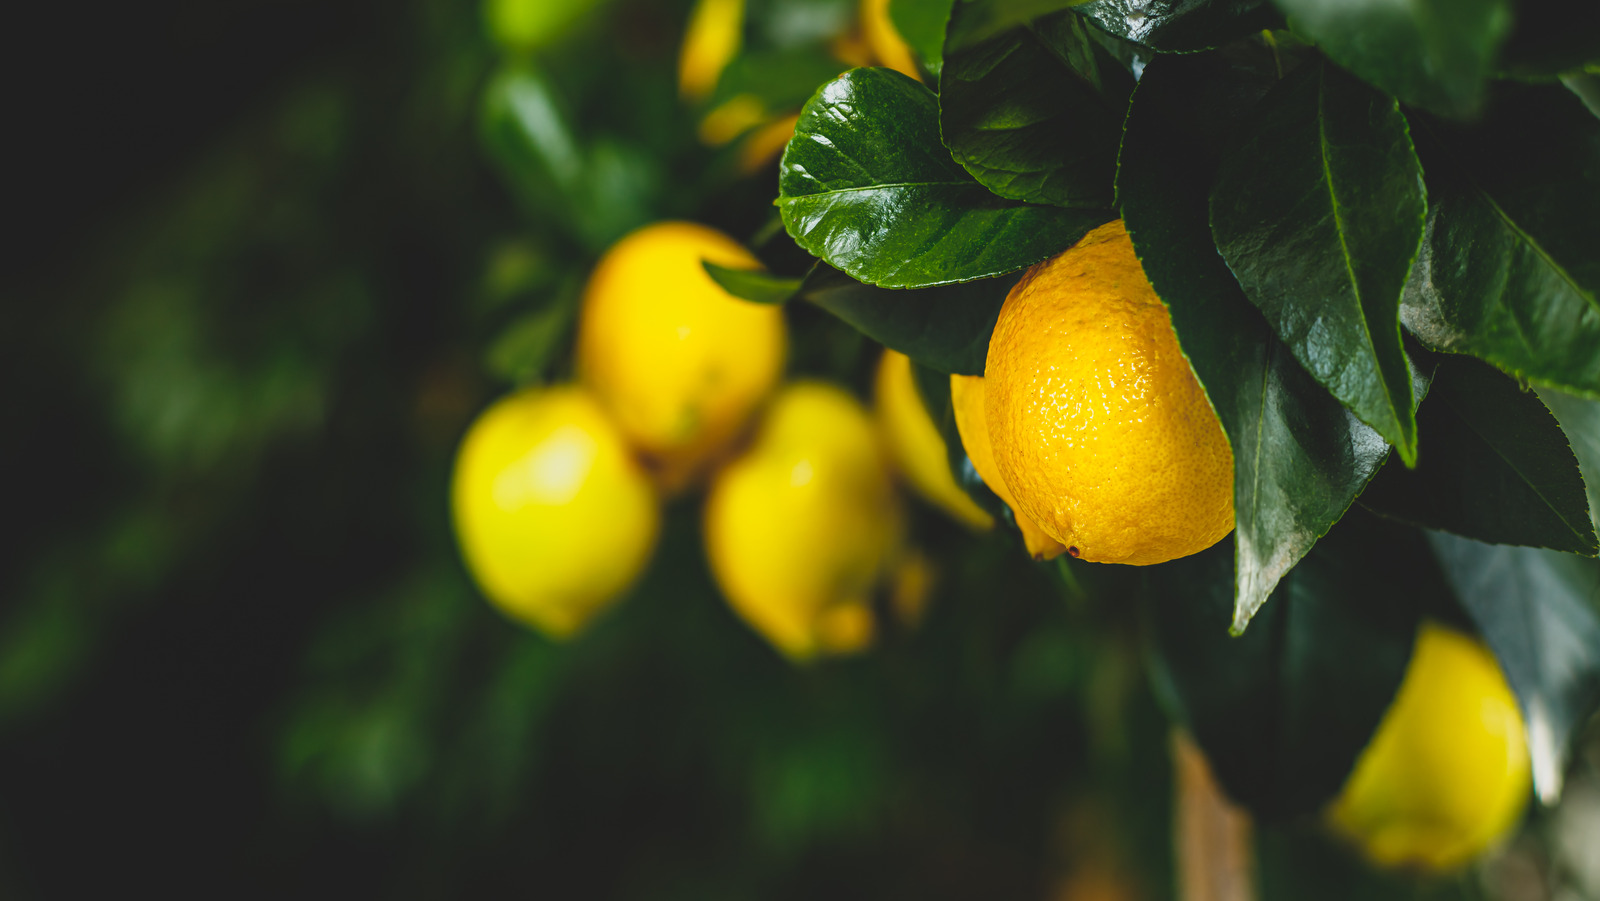 What Makes Fino Lemons So Unique?